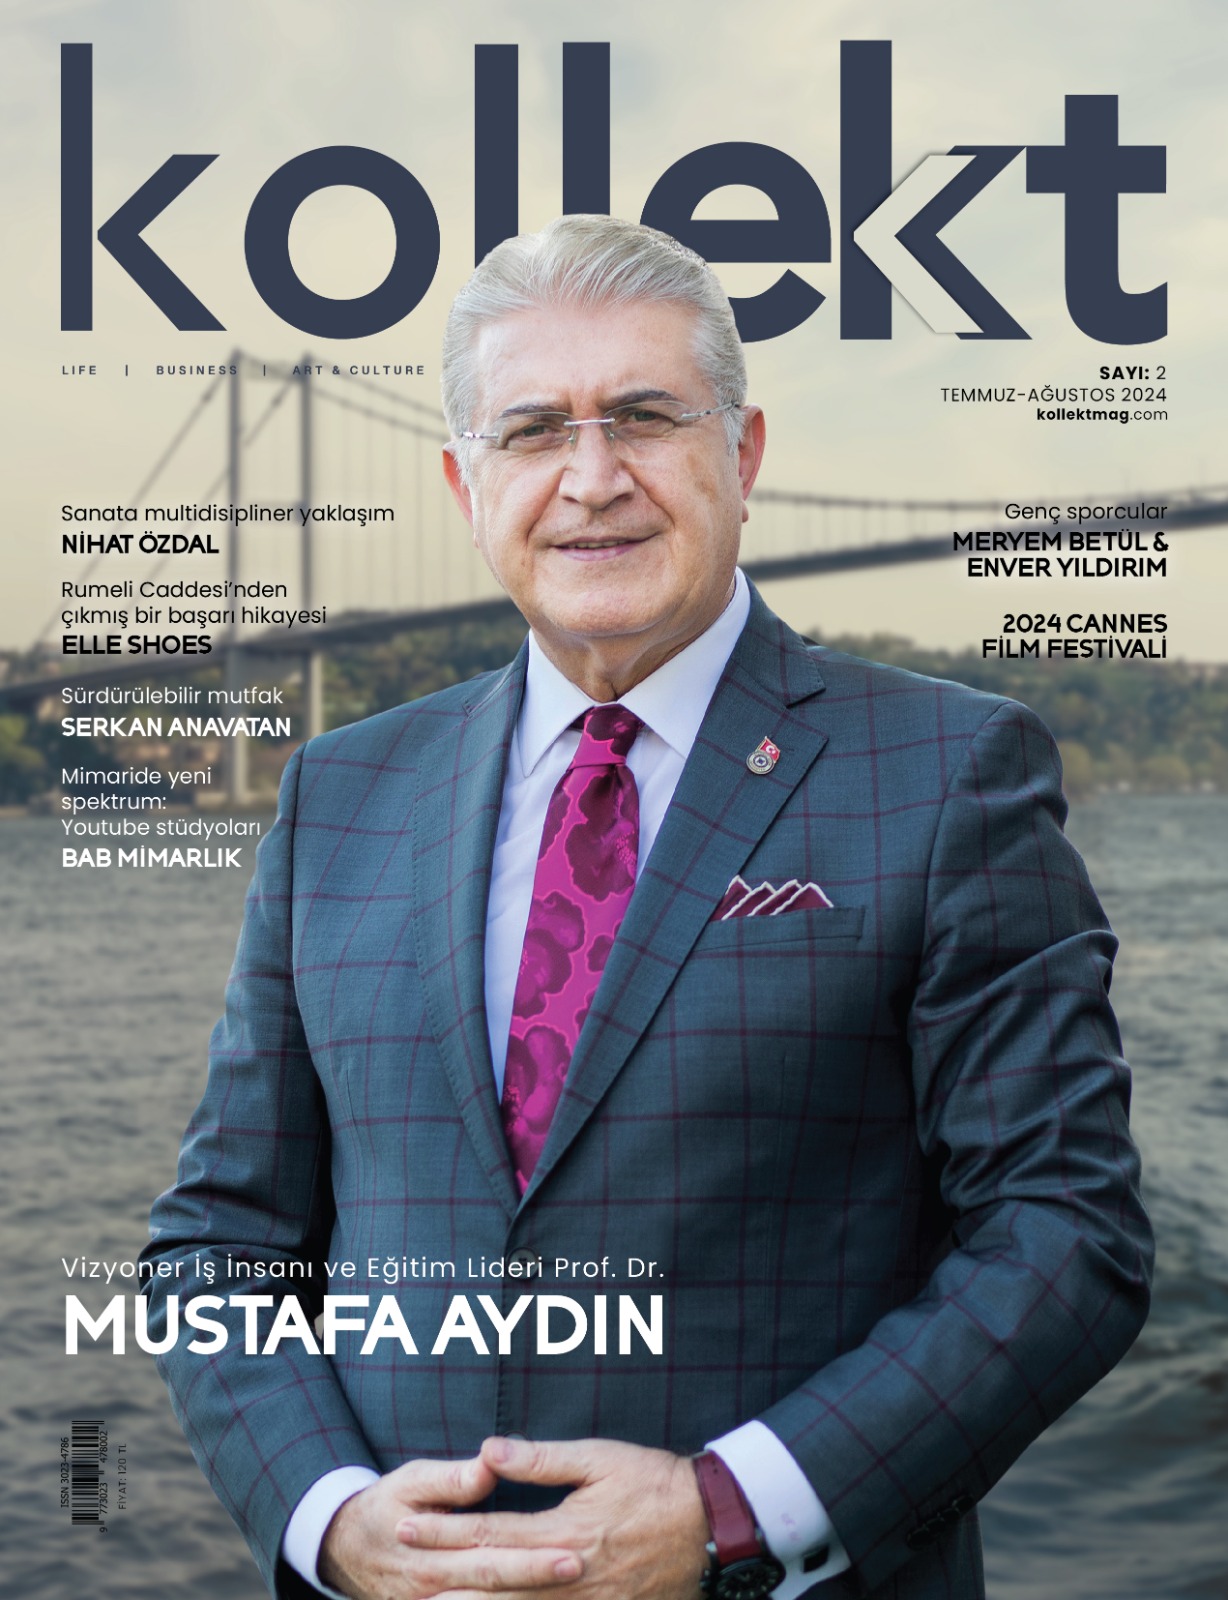 PROF. DR. MUSTAFA AYDIN FEATURED ON THE COVER OF KOLLEKTMAG MAGAZINE Öne Çıkan Görsel